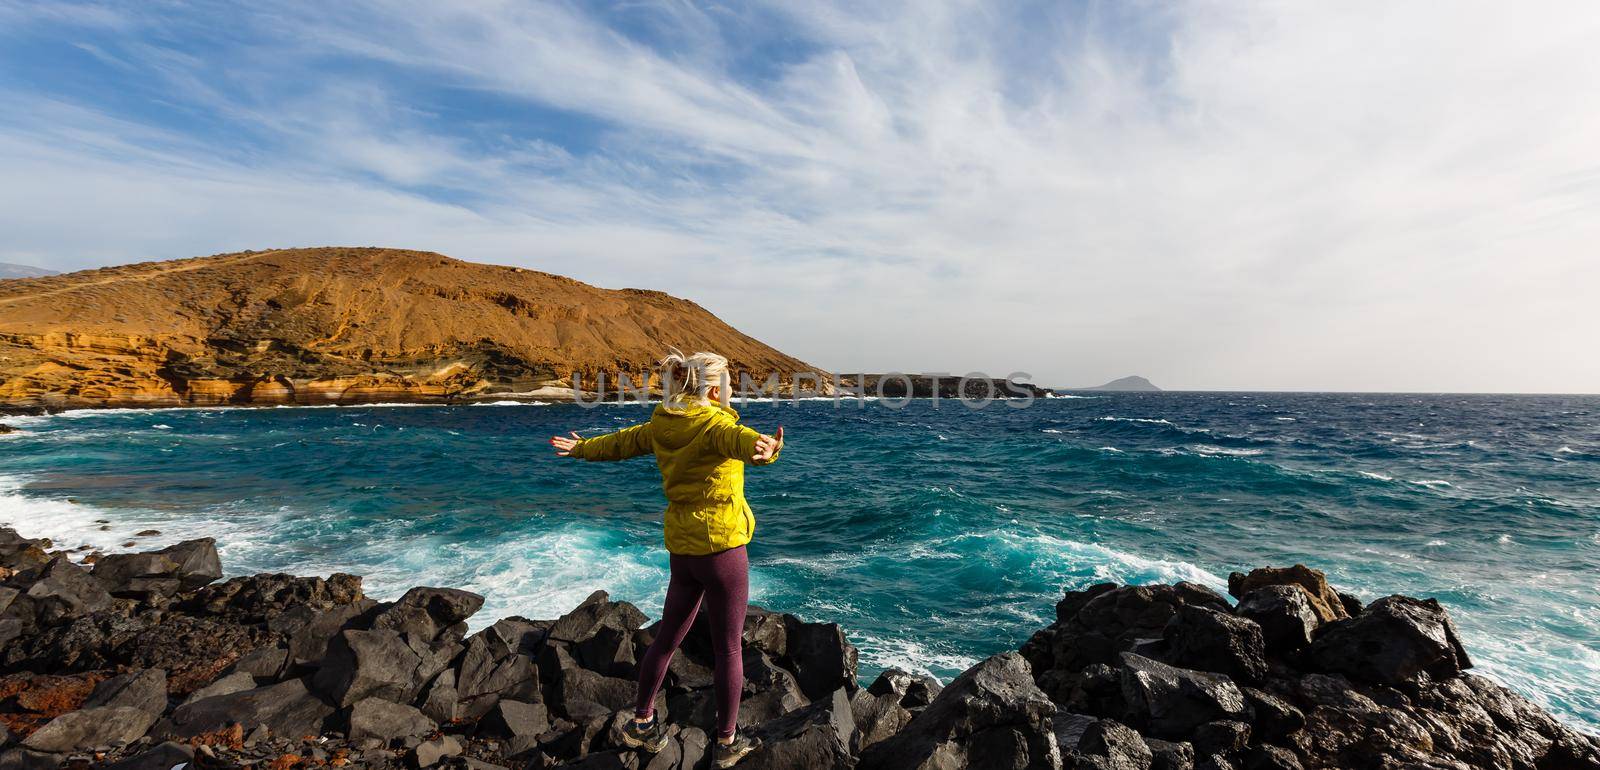 Traveler girl enjoying the beach in Tenerife by Andelov13